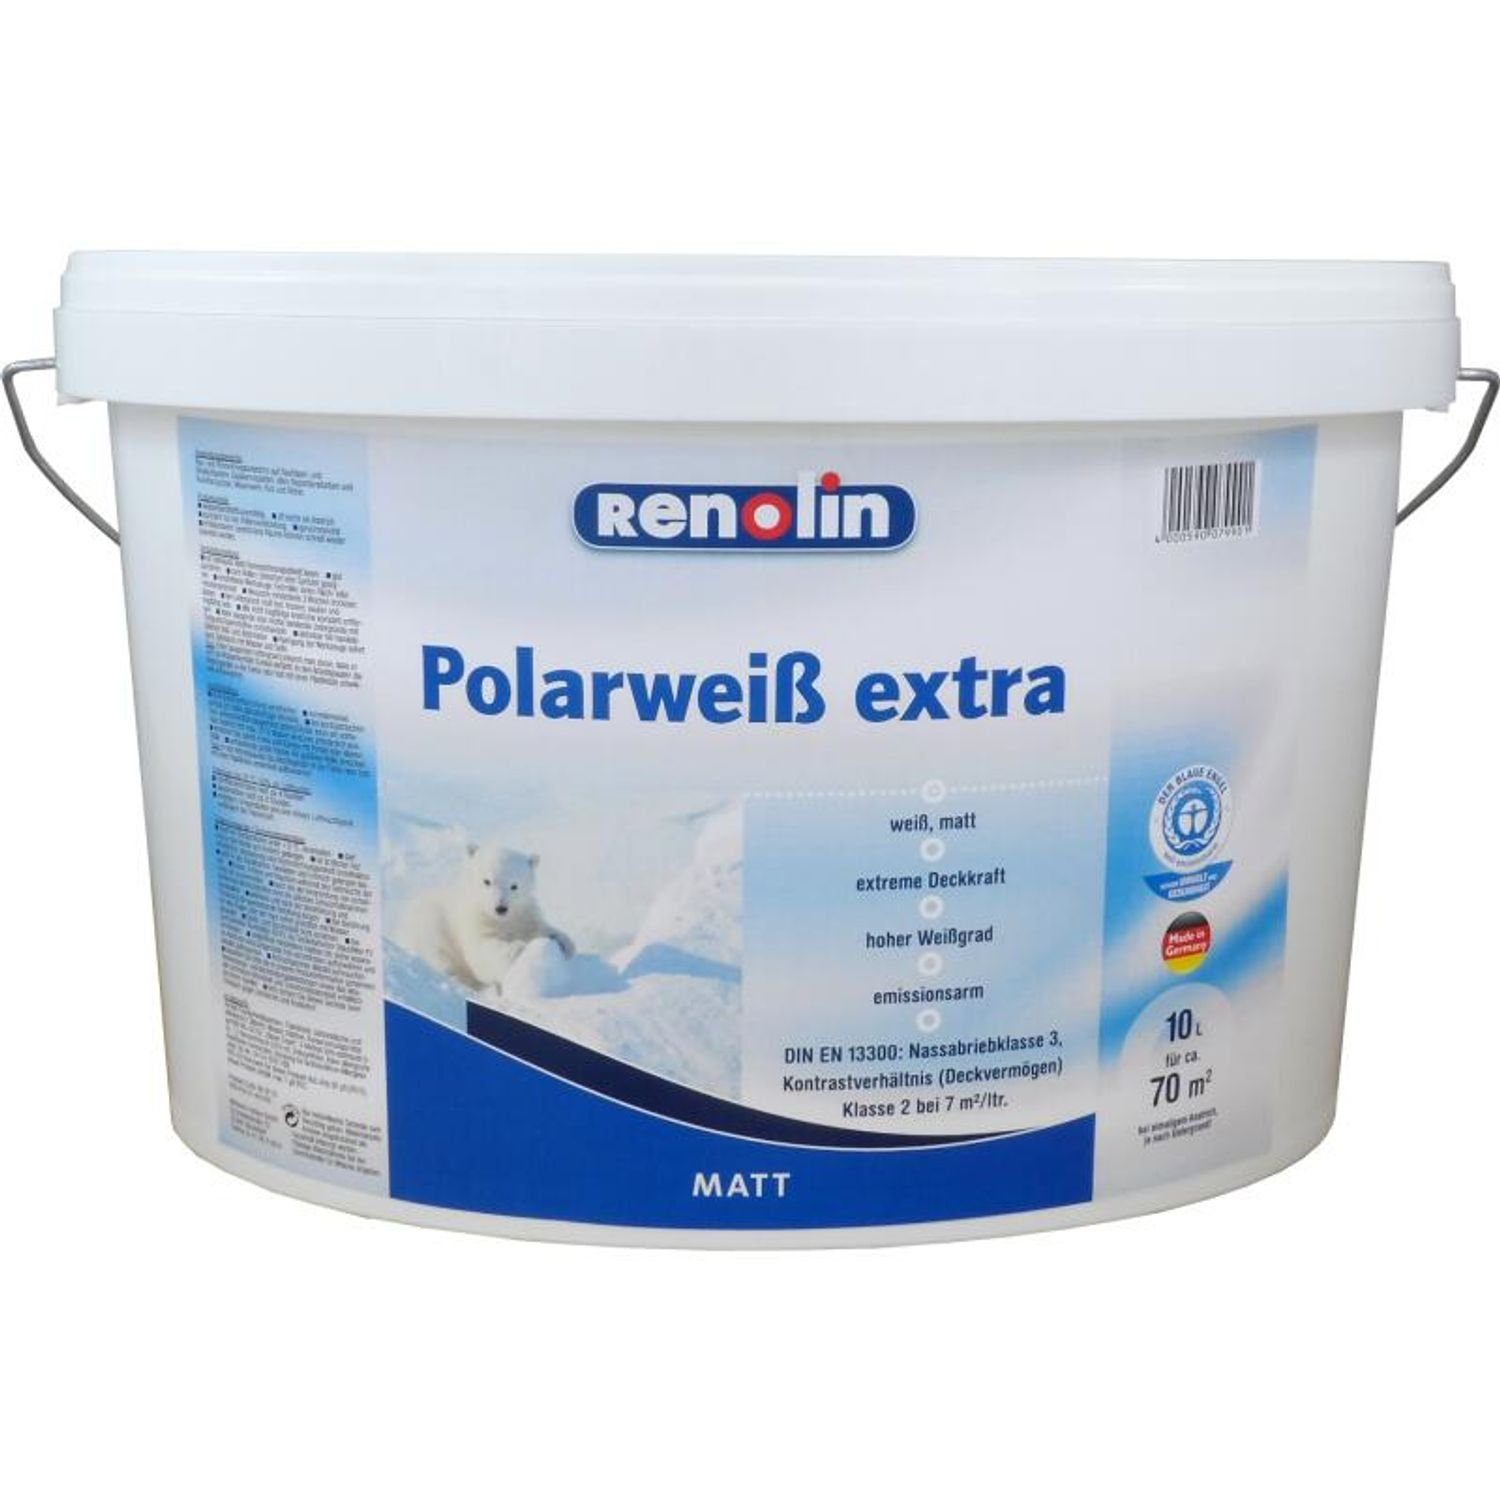 Vollton- extreme Liter weiß 10 Abtönfarbe Wilckens matt extra 70m² Farben Renolin und Wandfarbe Polarweiß